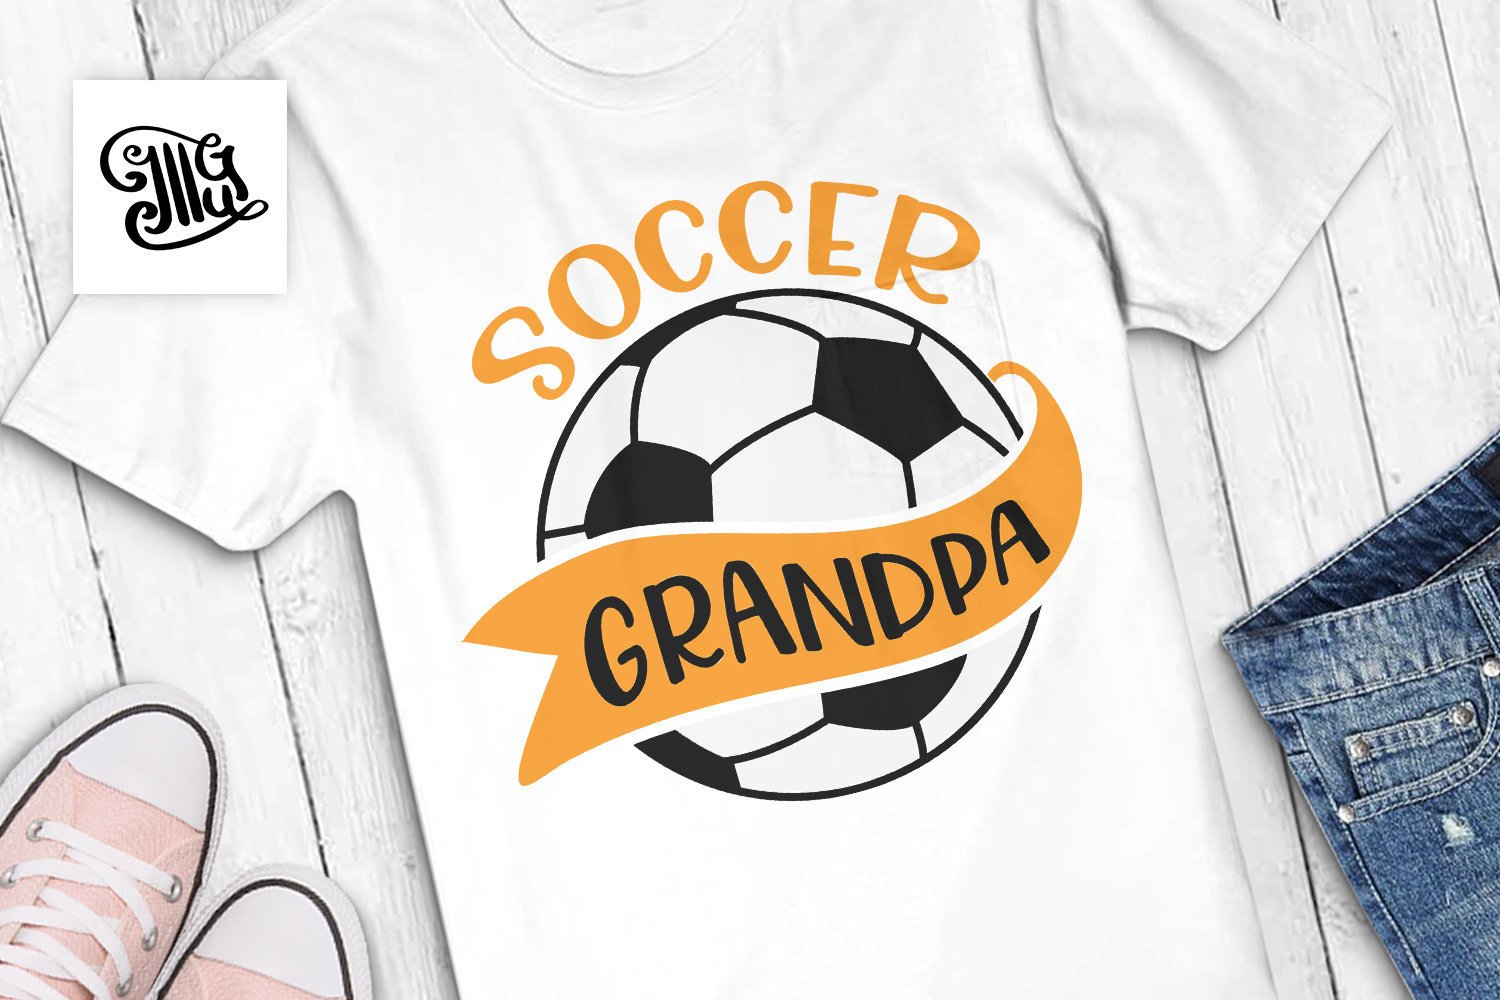 Download Soccer grandpa svg, soccer nana svg, socer paw paw svg ...